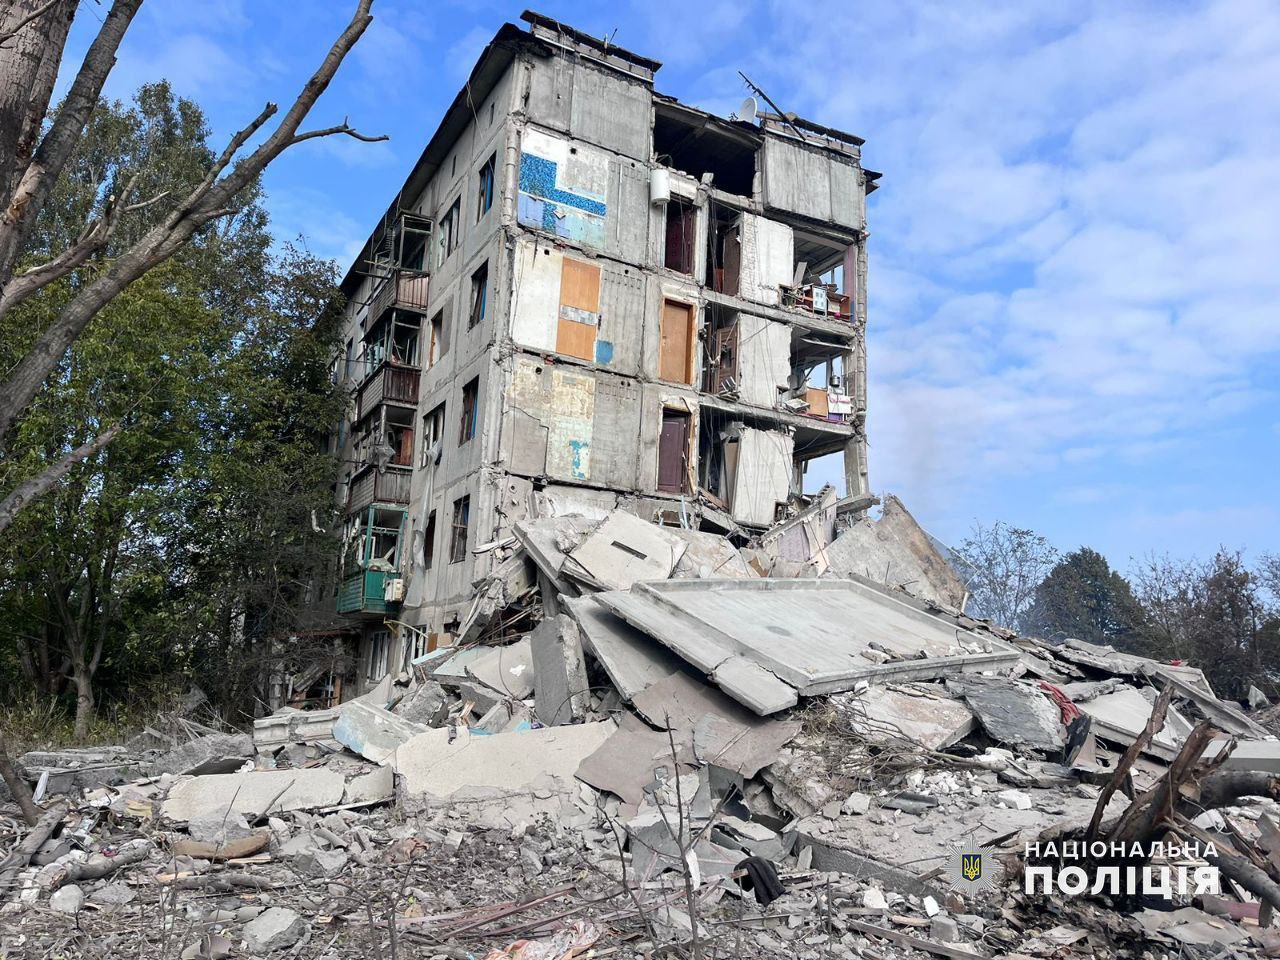 Фото розбитого бомбою будинку. Джерело - Телеграм